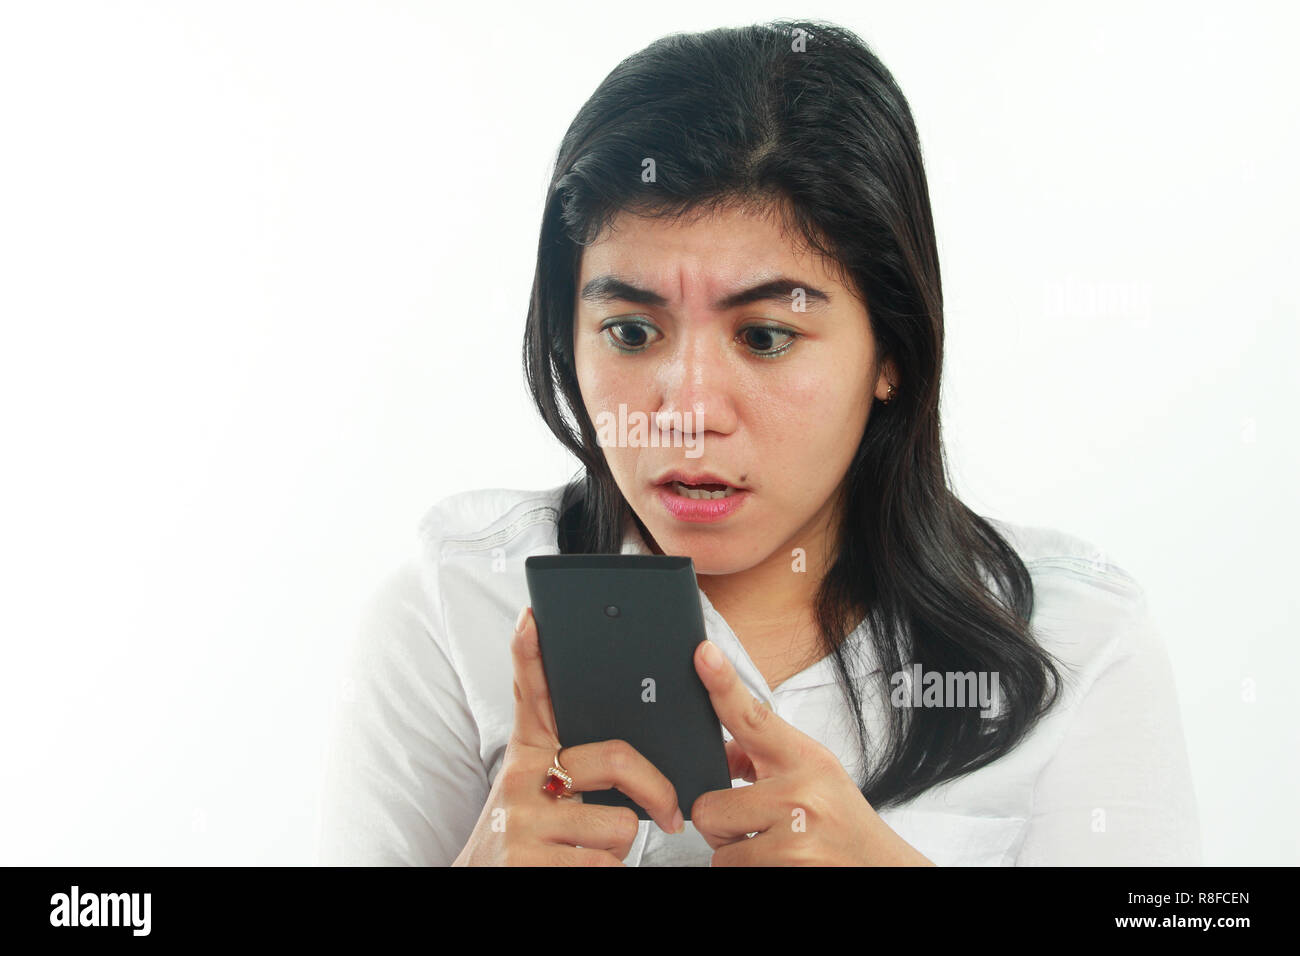 Foto Portrait von eine nette junge asiatische Frau mit Mole sah schockiert und traurig schlechte Nachrichten auf Ihrem Smartphone zu erhalten. Halten Sie das Telefon mit beiden Händen Stockfoto